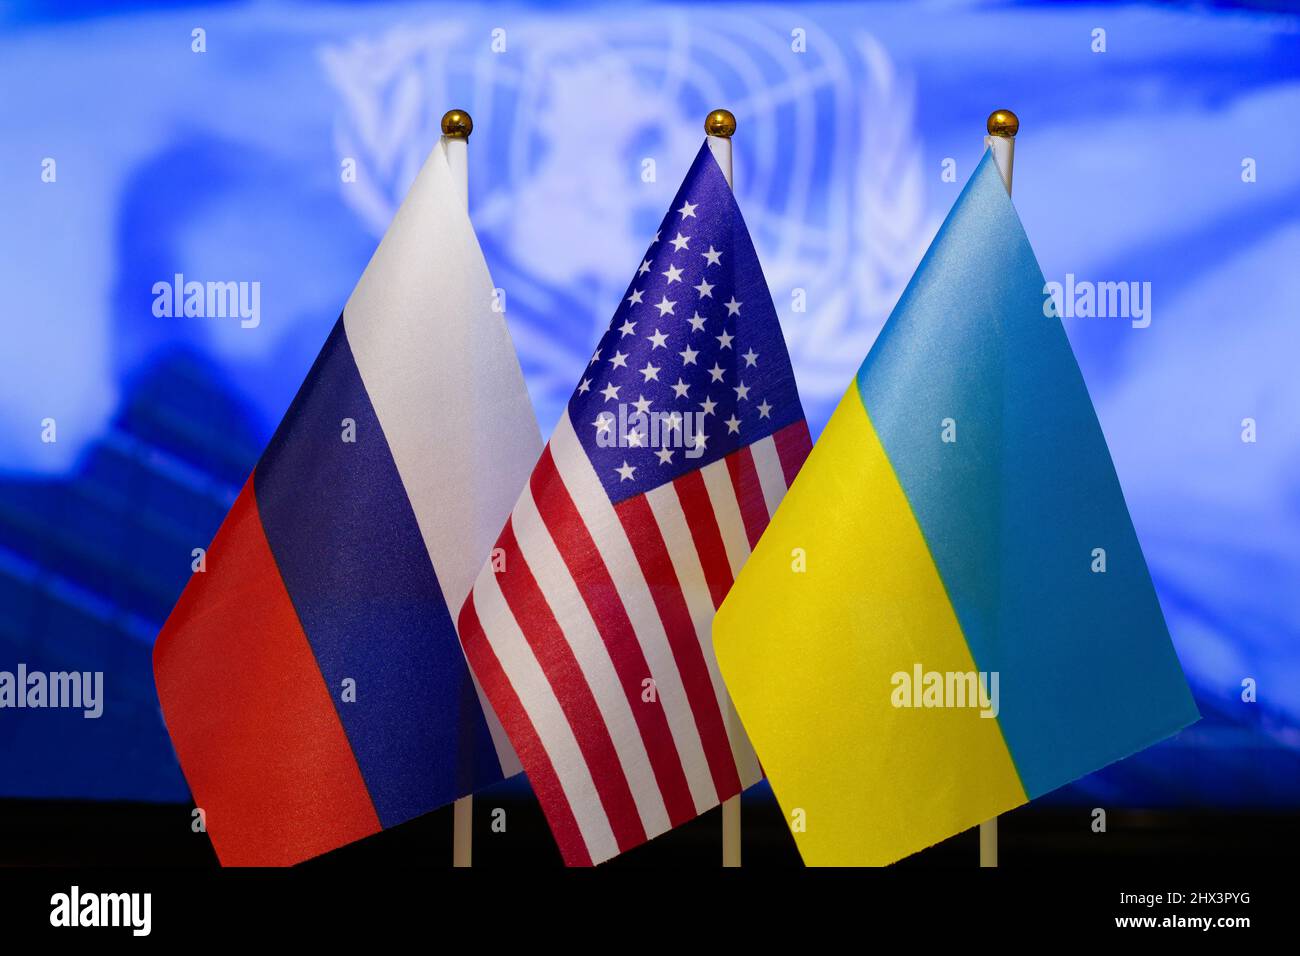 Die US-Flagge, die russische Flagge, die ukrainische Flagge. Flagge der USA, Flagge Russlands, Flagge der Ukraine. Die Vereinigten Staaten von Amerika und die Russische Föderation Stockfoto